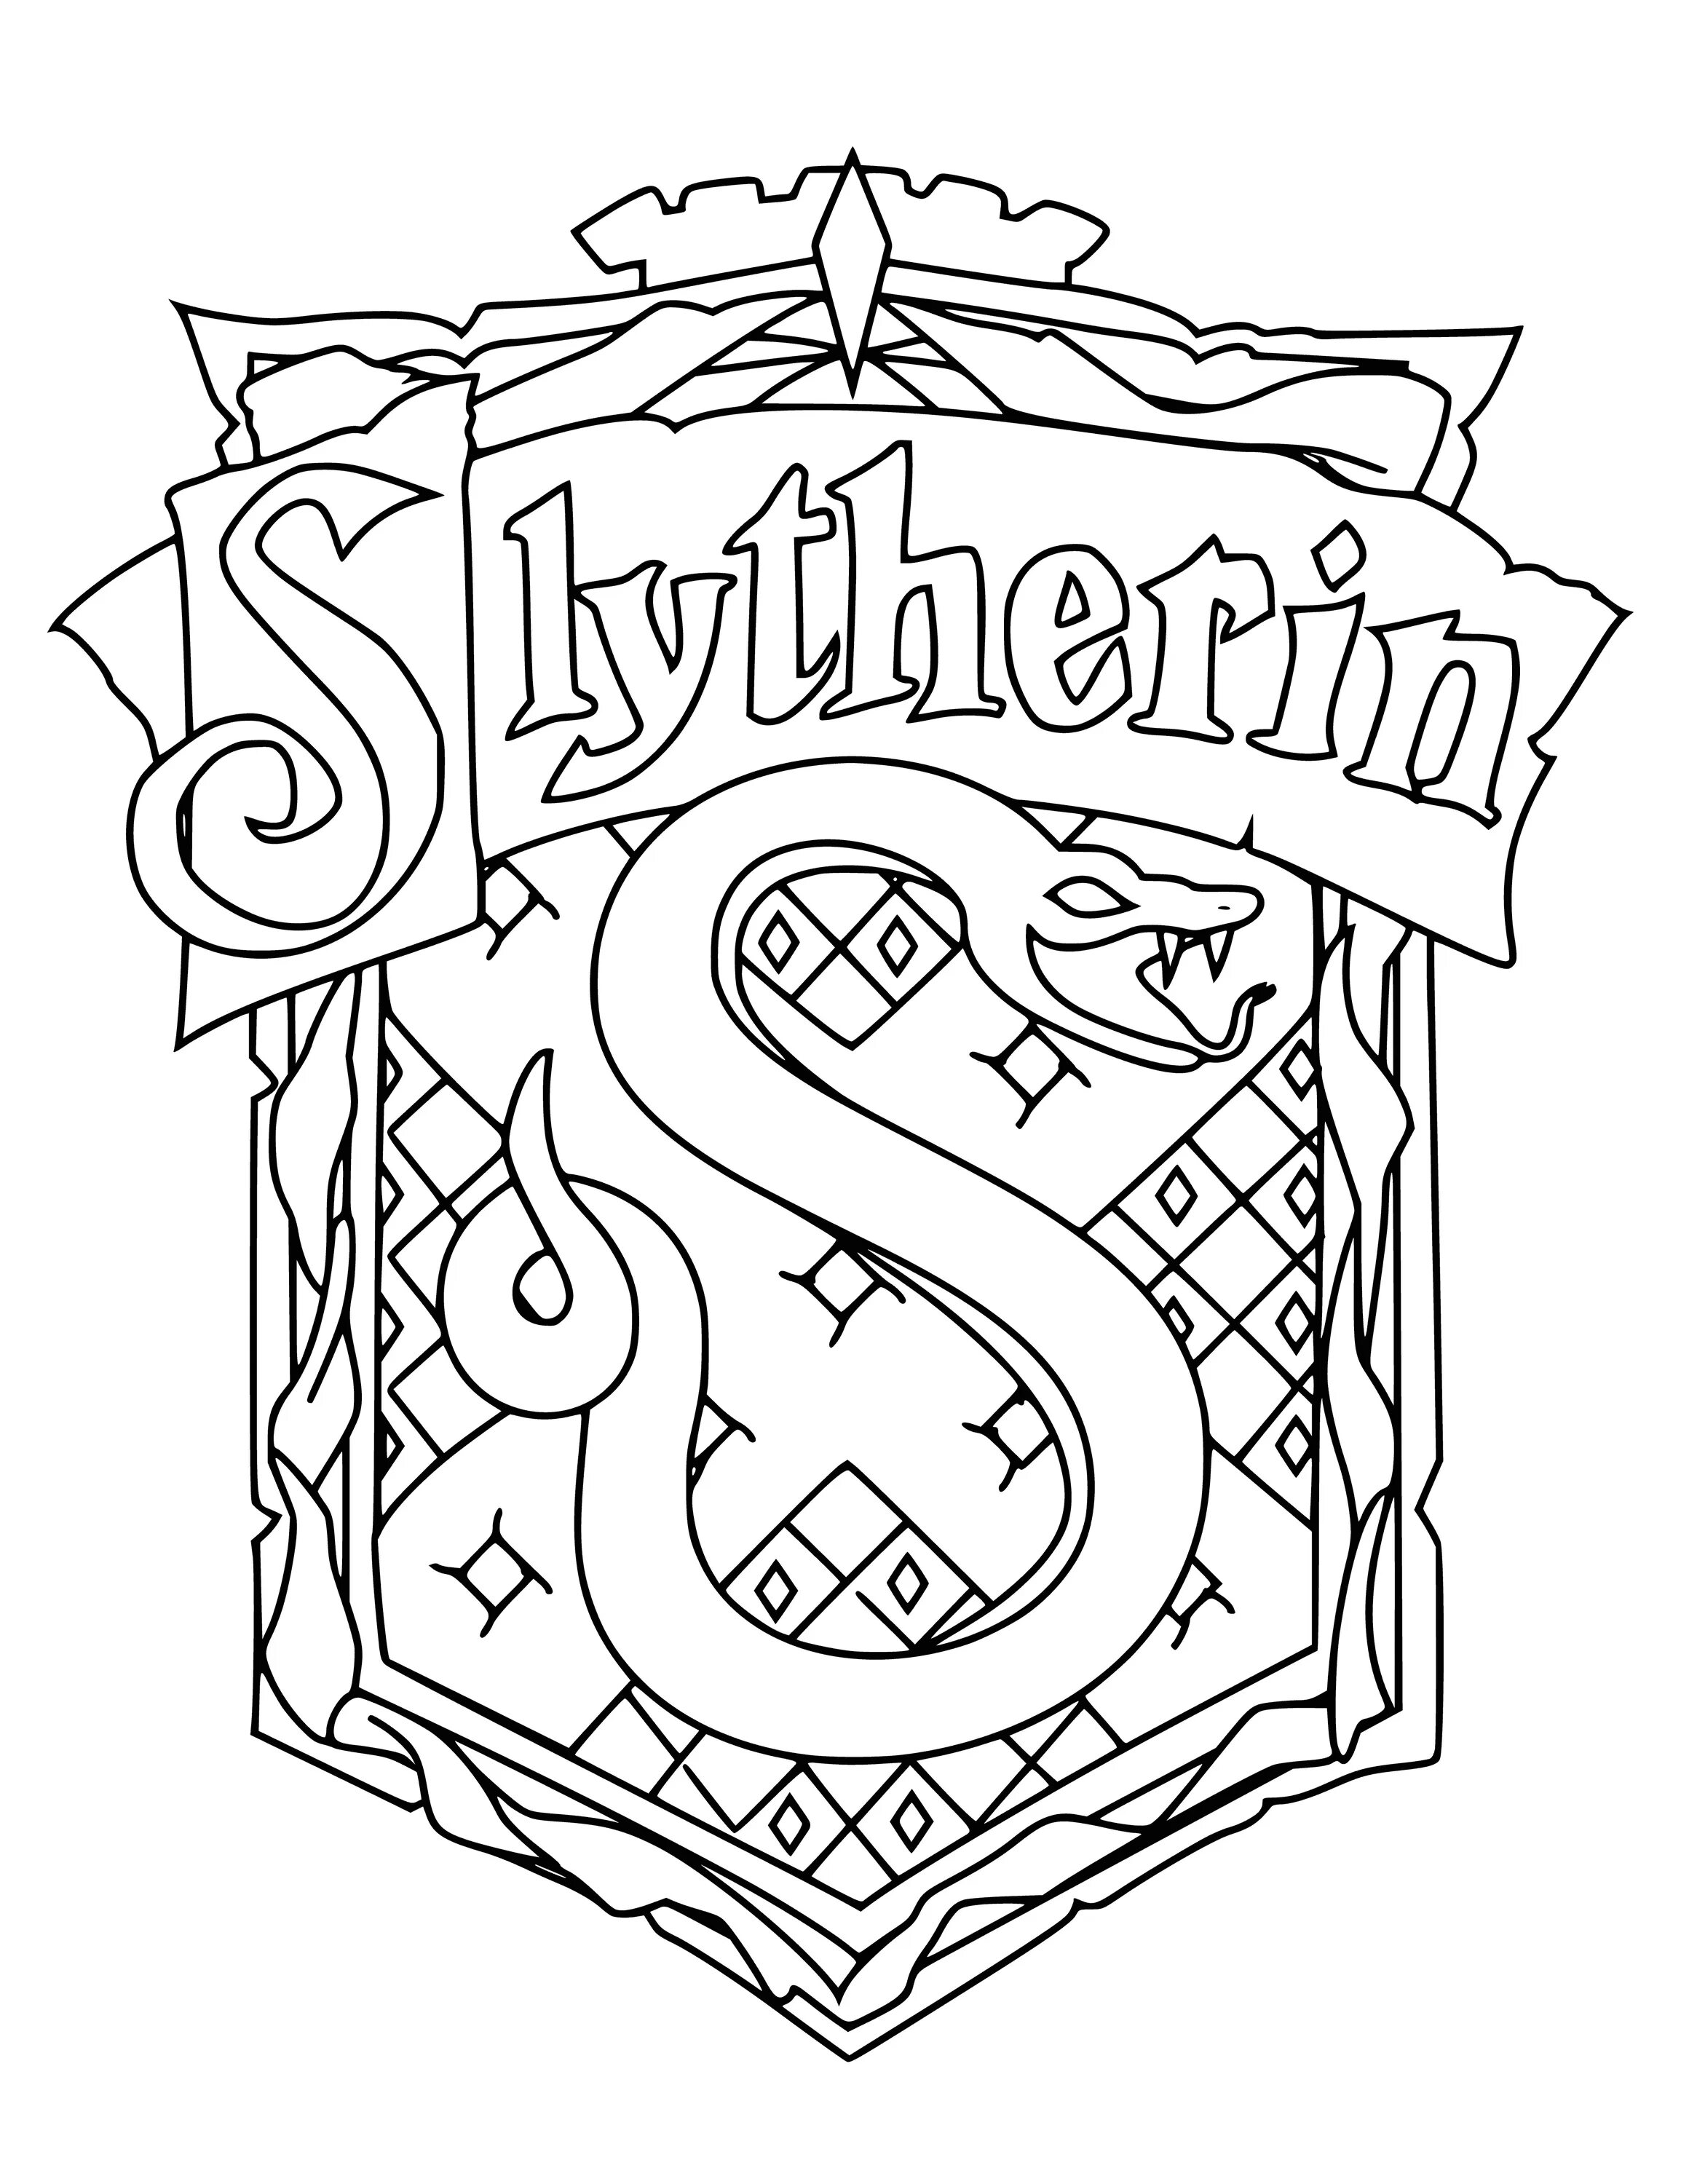 Harry potter slytherin #2